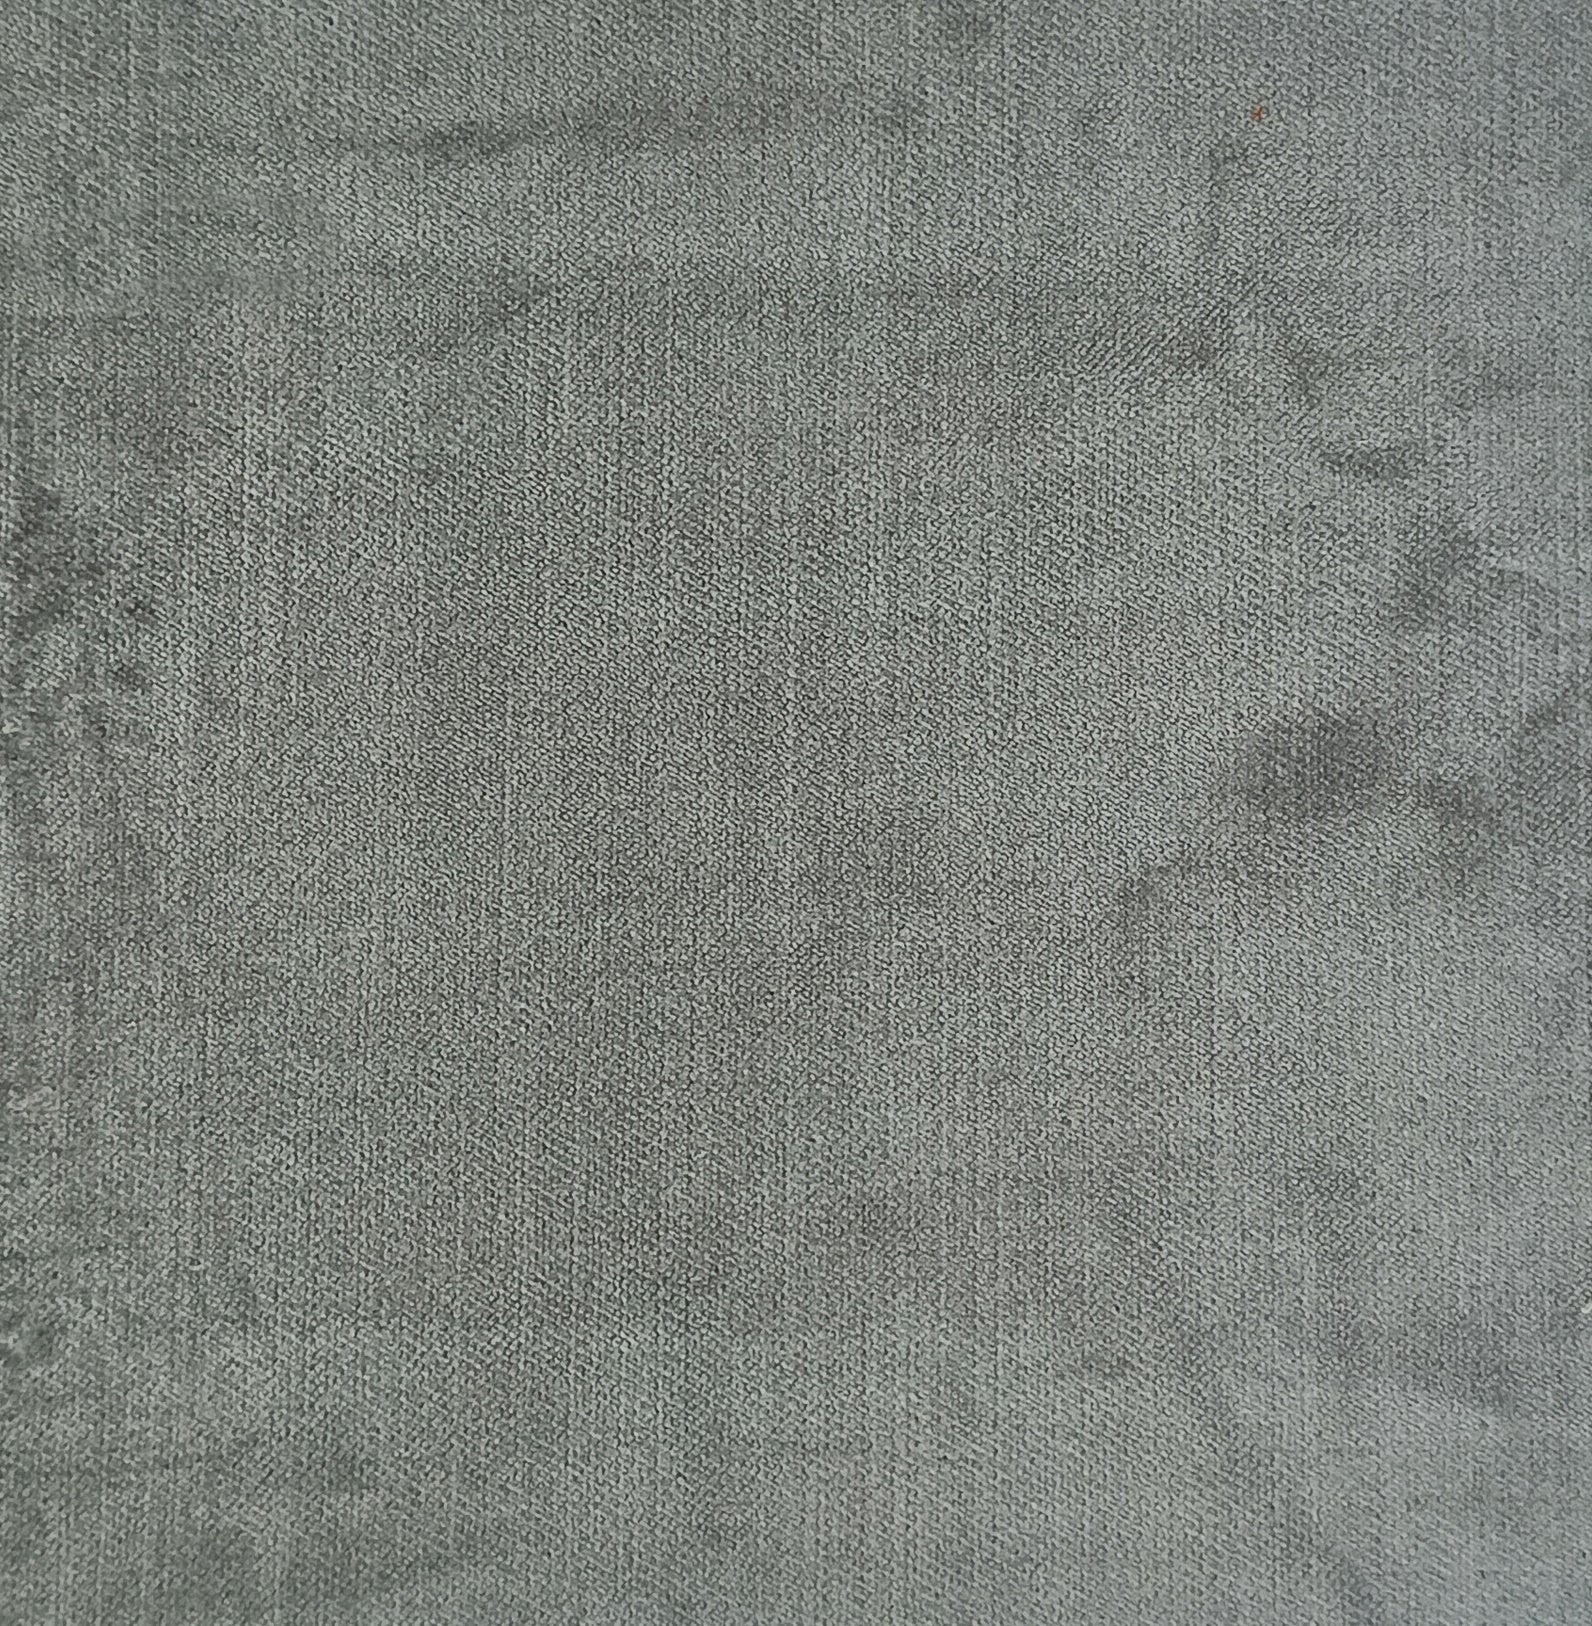 Silver grey velvet upholstery fabric